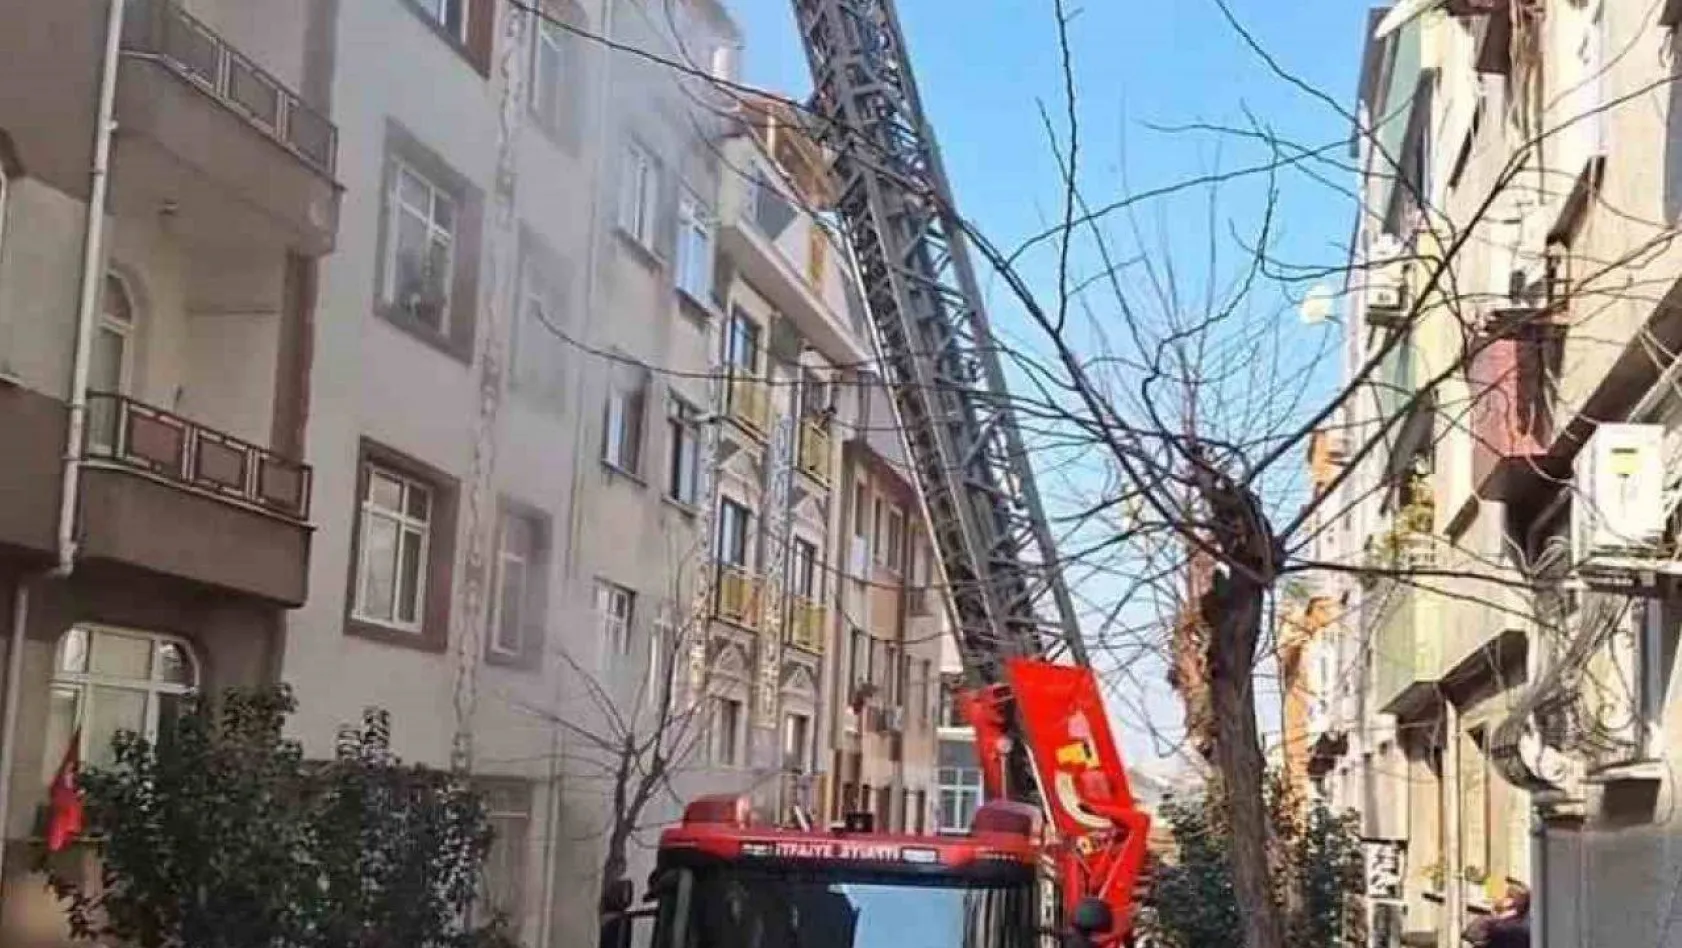 Bayrampaşa'da 4 katlı binada yangın çıktı: İçeride mahsur kalan 1 kişi ağır yaralandı